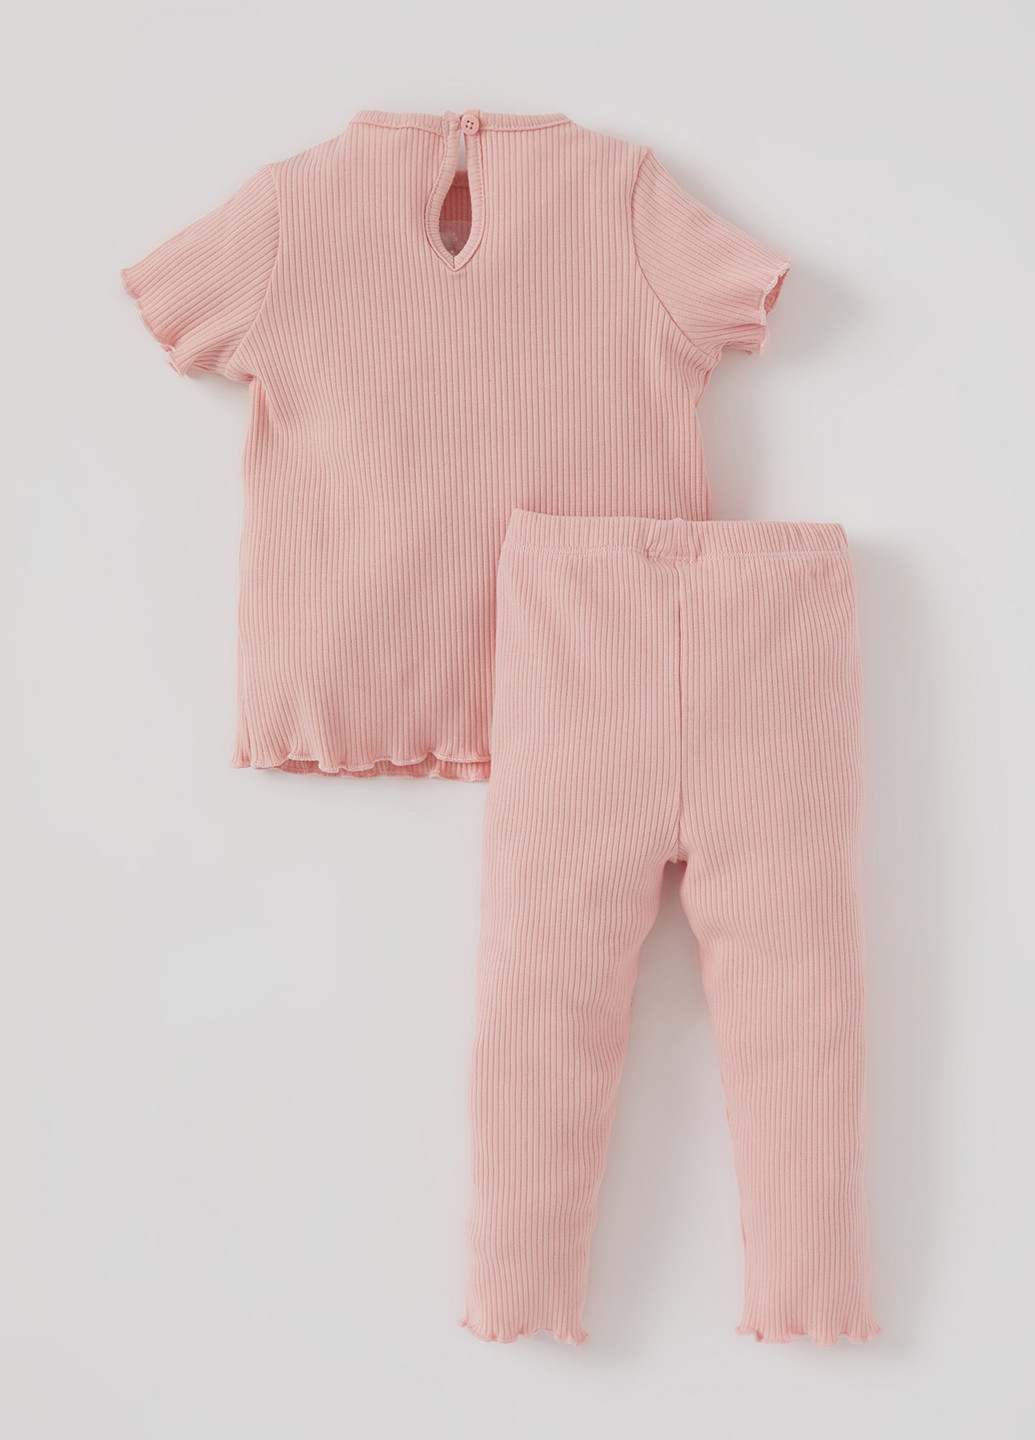 Розовая всесезон пижама(футболка, брюки) футболка + брюки DeFacto